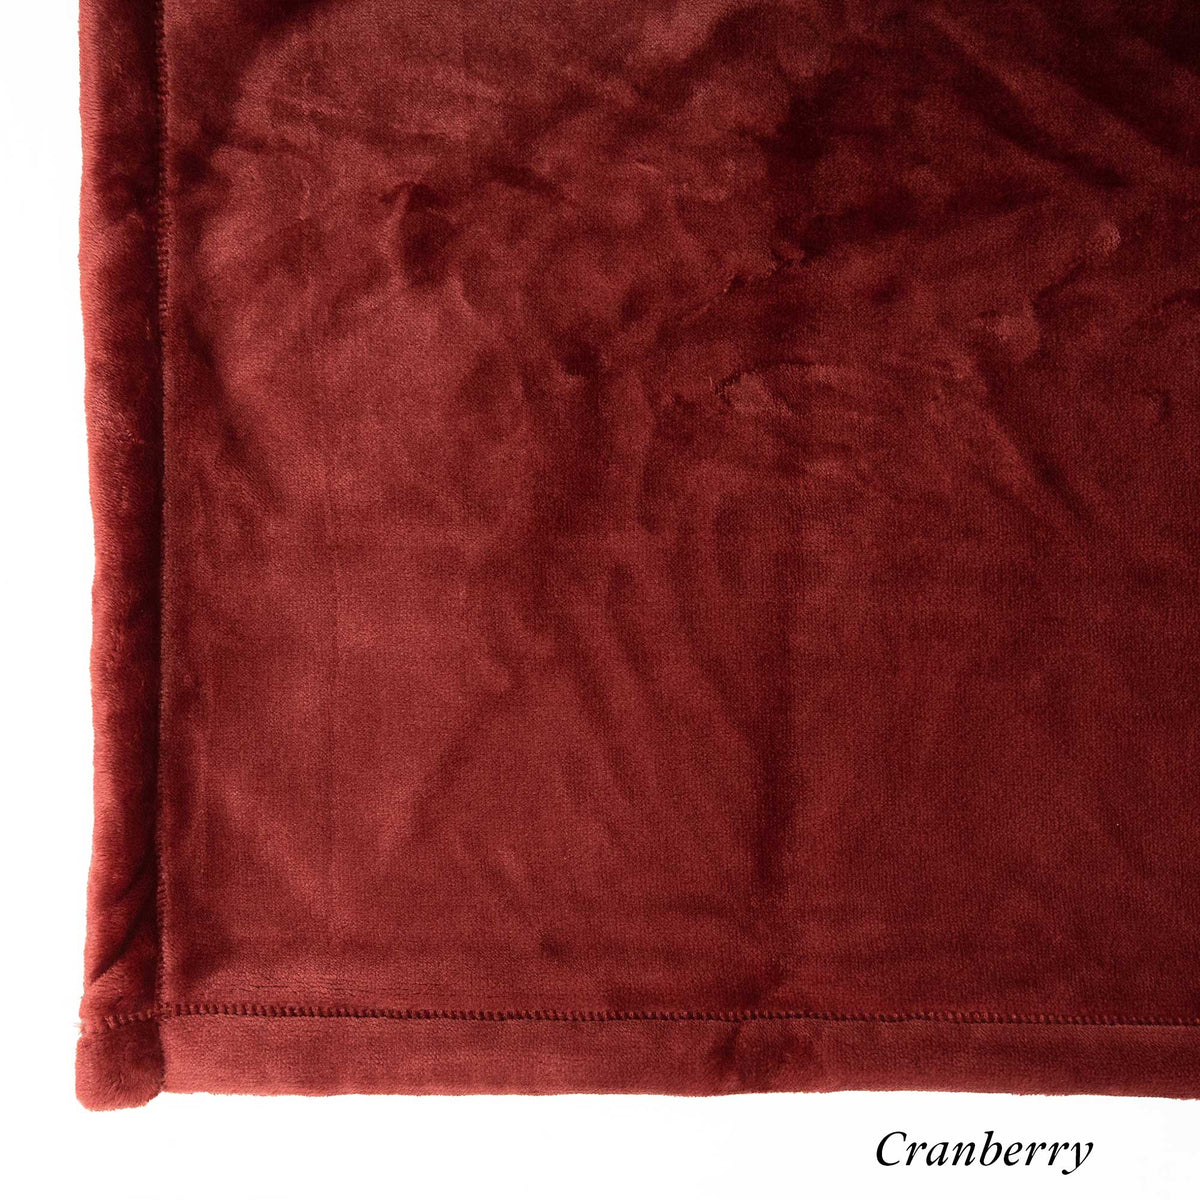 Cranberry Loft Fleece Swatch - Luster Loft Fleece Blankets - American Blanket Company